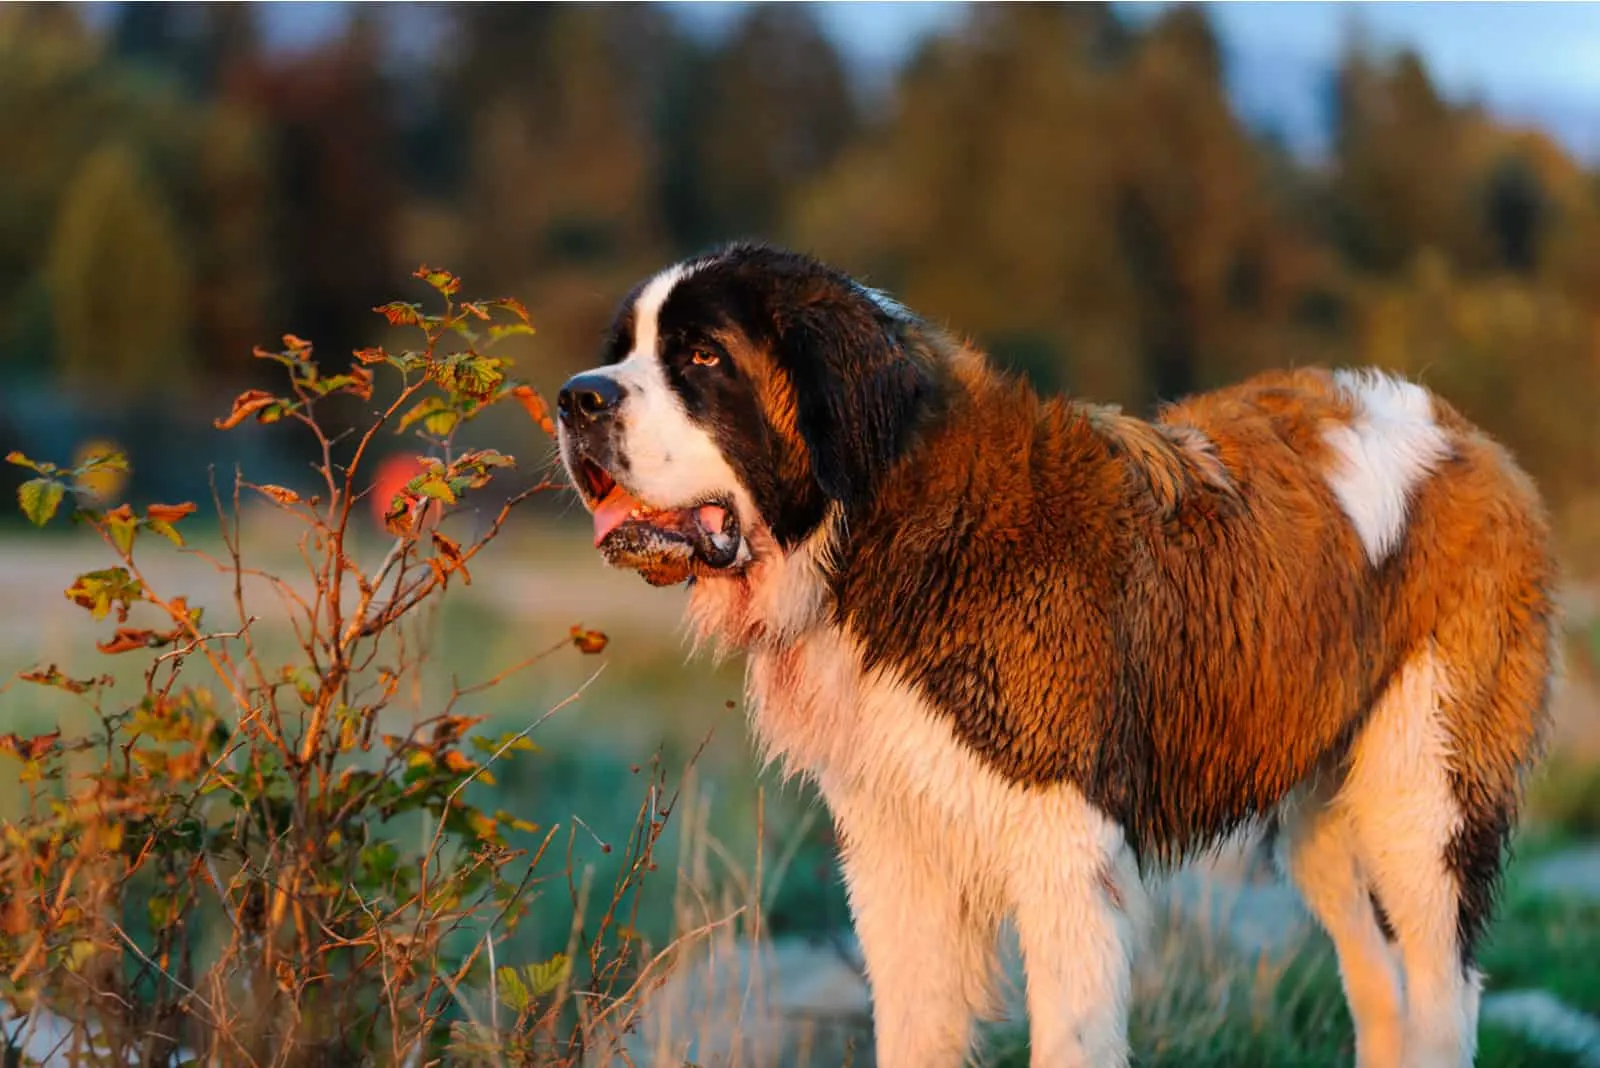 Saint Bernard dog stands in nature